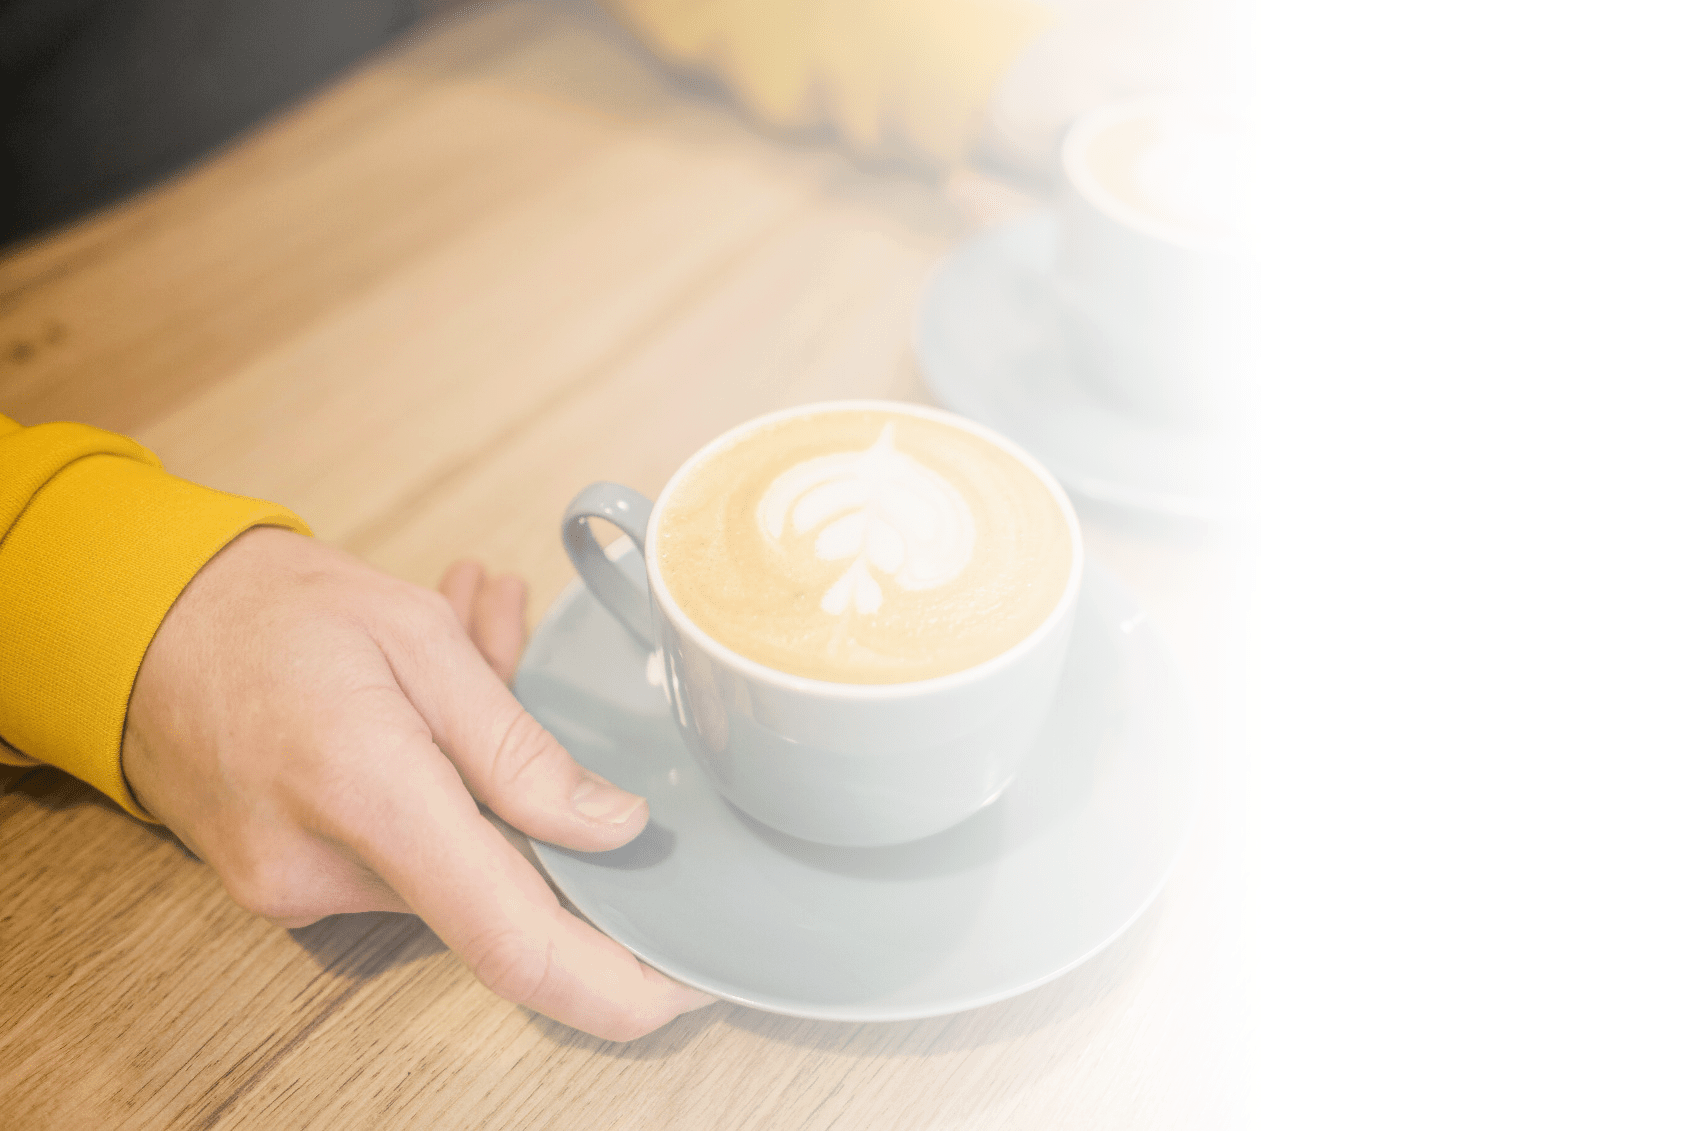 Das Bild zeigt eine Kaffee Tasse und symbolisiert Kaffee und Tee Flatrates für Mitarbeiter